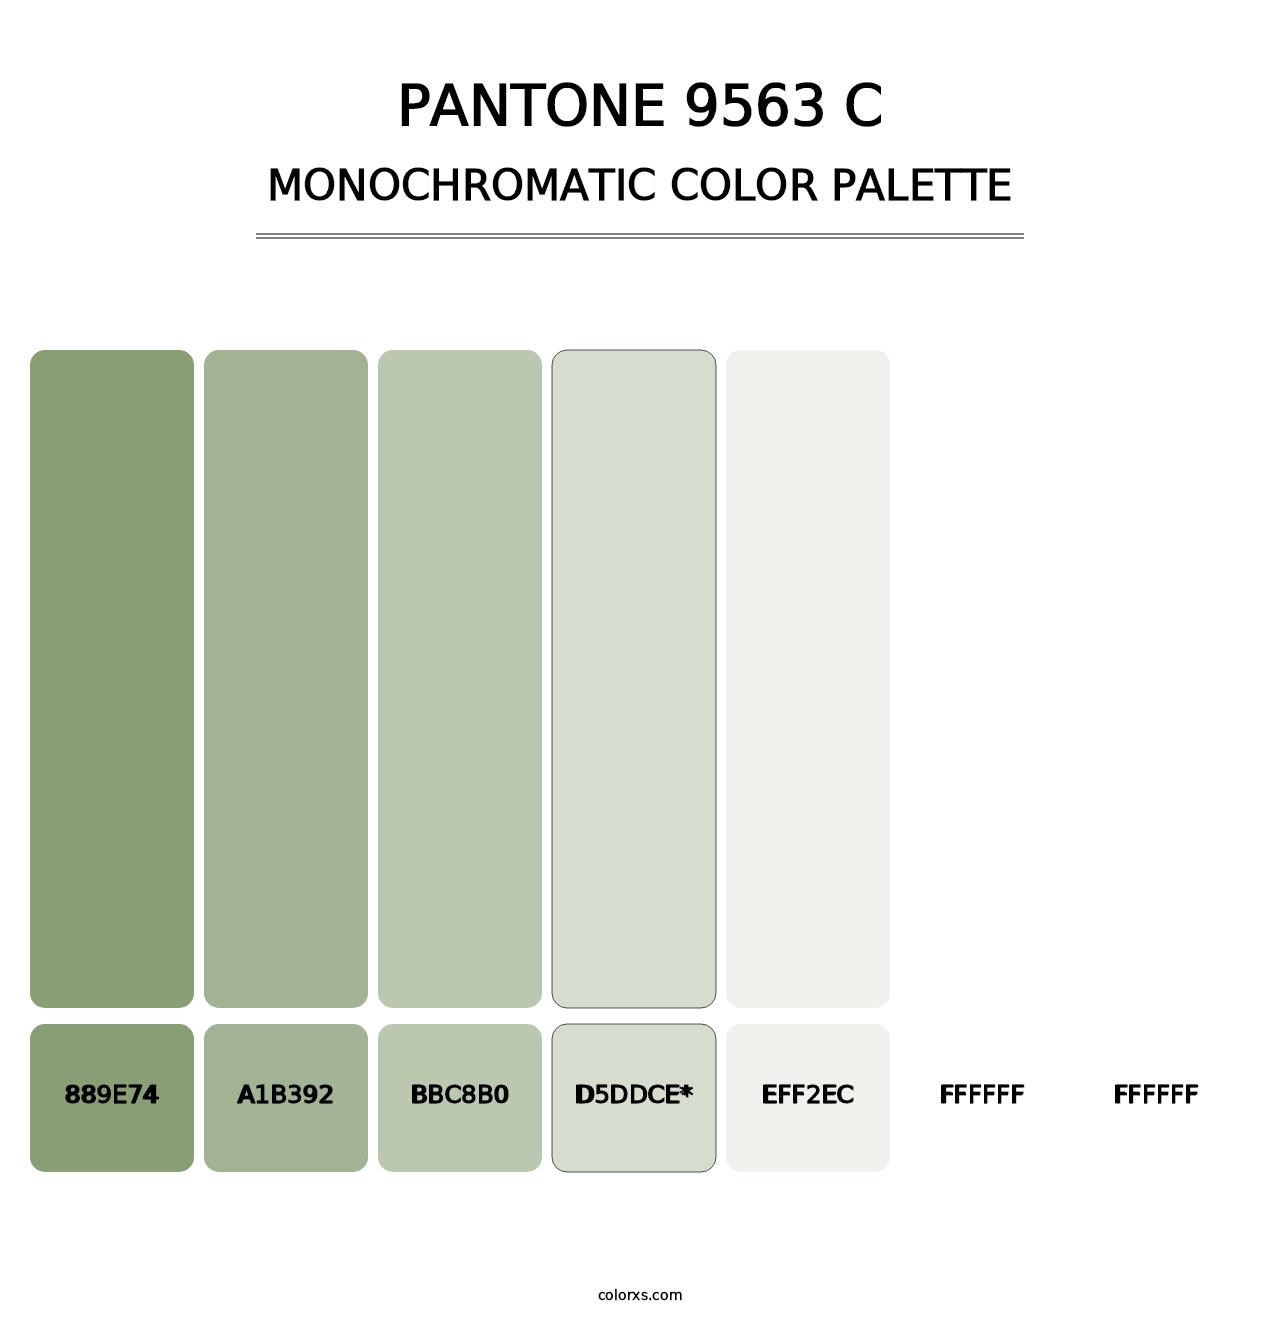 PANTONE 9563 C - Monochromatic Color Palette